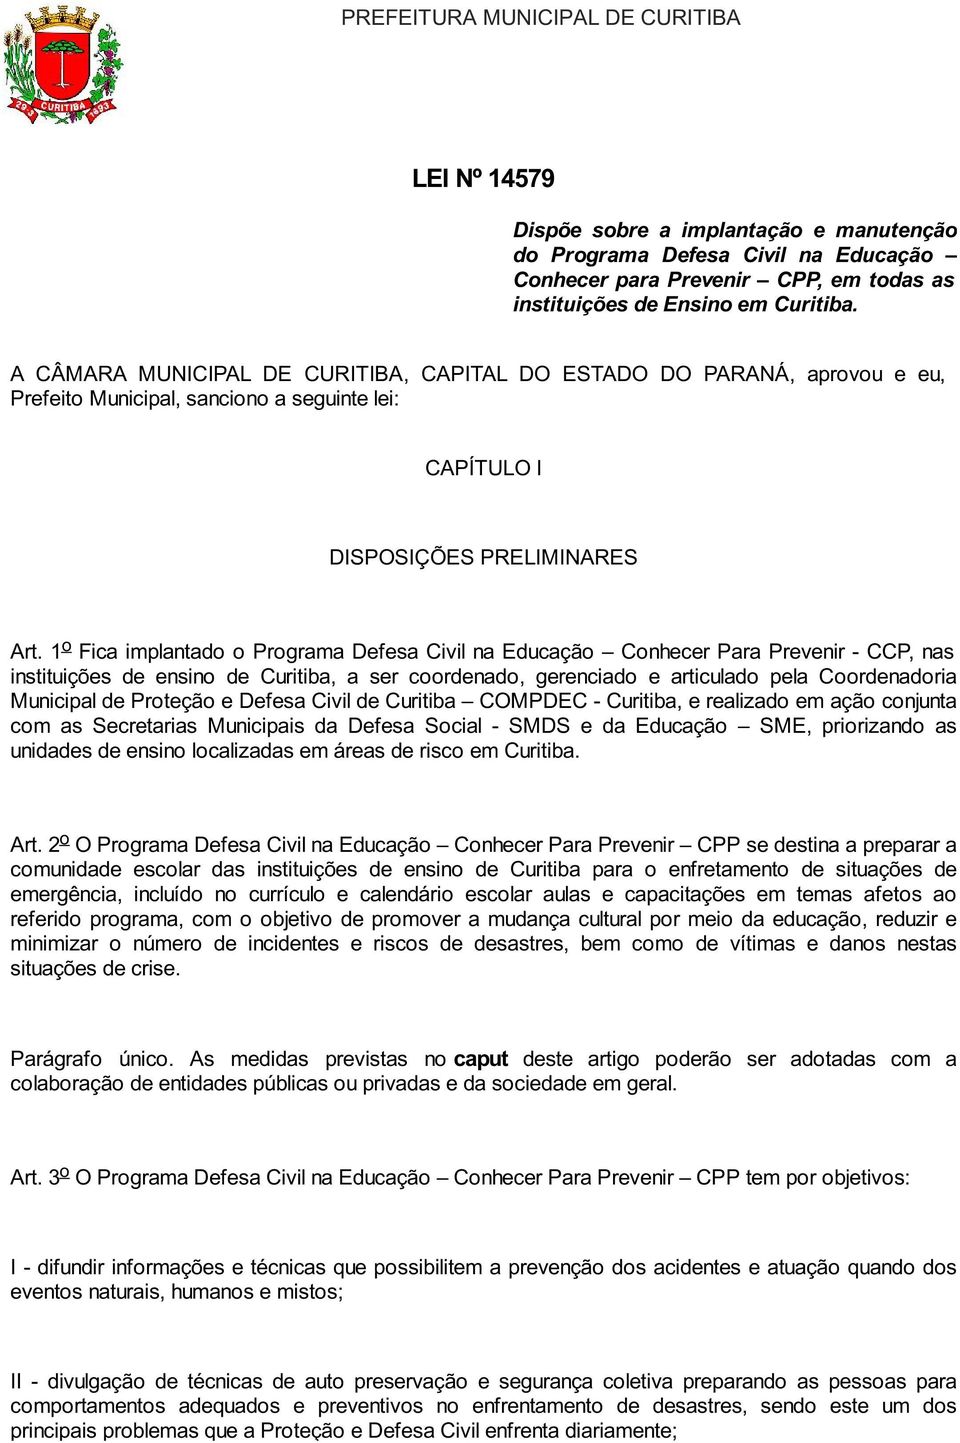 1 o Fica implantado o Programa Defesa Civil na Educação Conhecer Para Prevenir - CCP, nas instituições de ensino de Curitiba, a ser coordenado, gerenciado e articulado pela Coordenadoria Municipal de